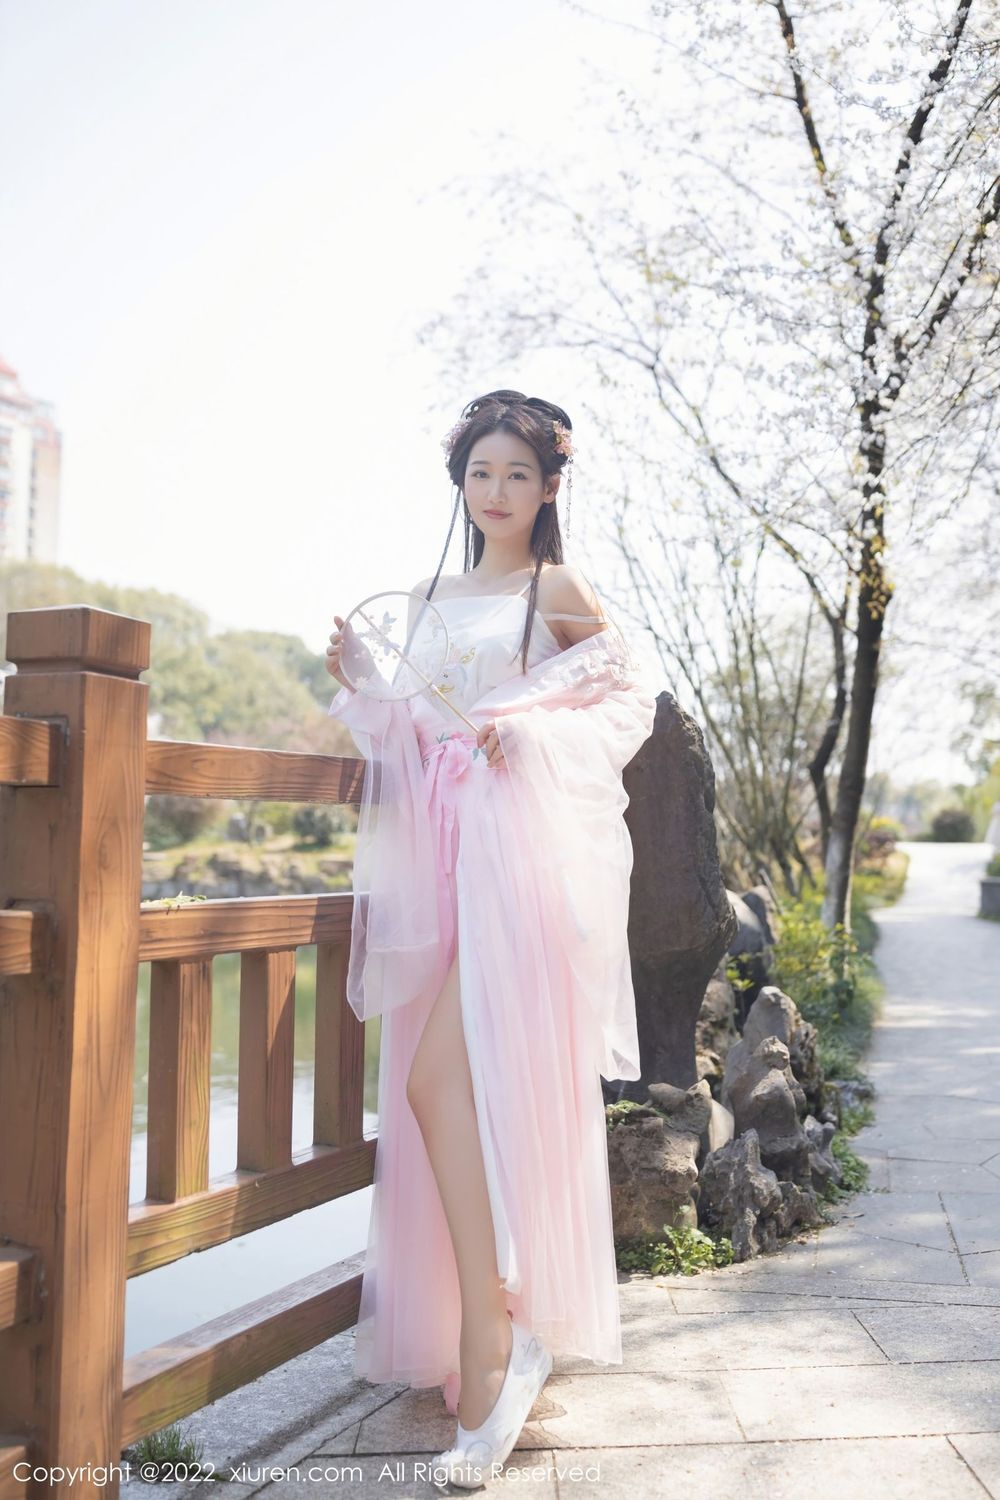 美女模特唐安琪薄纱轻透淡粉色古装服饰珠三角旅拍